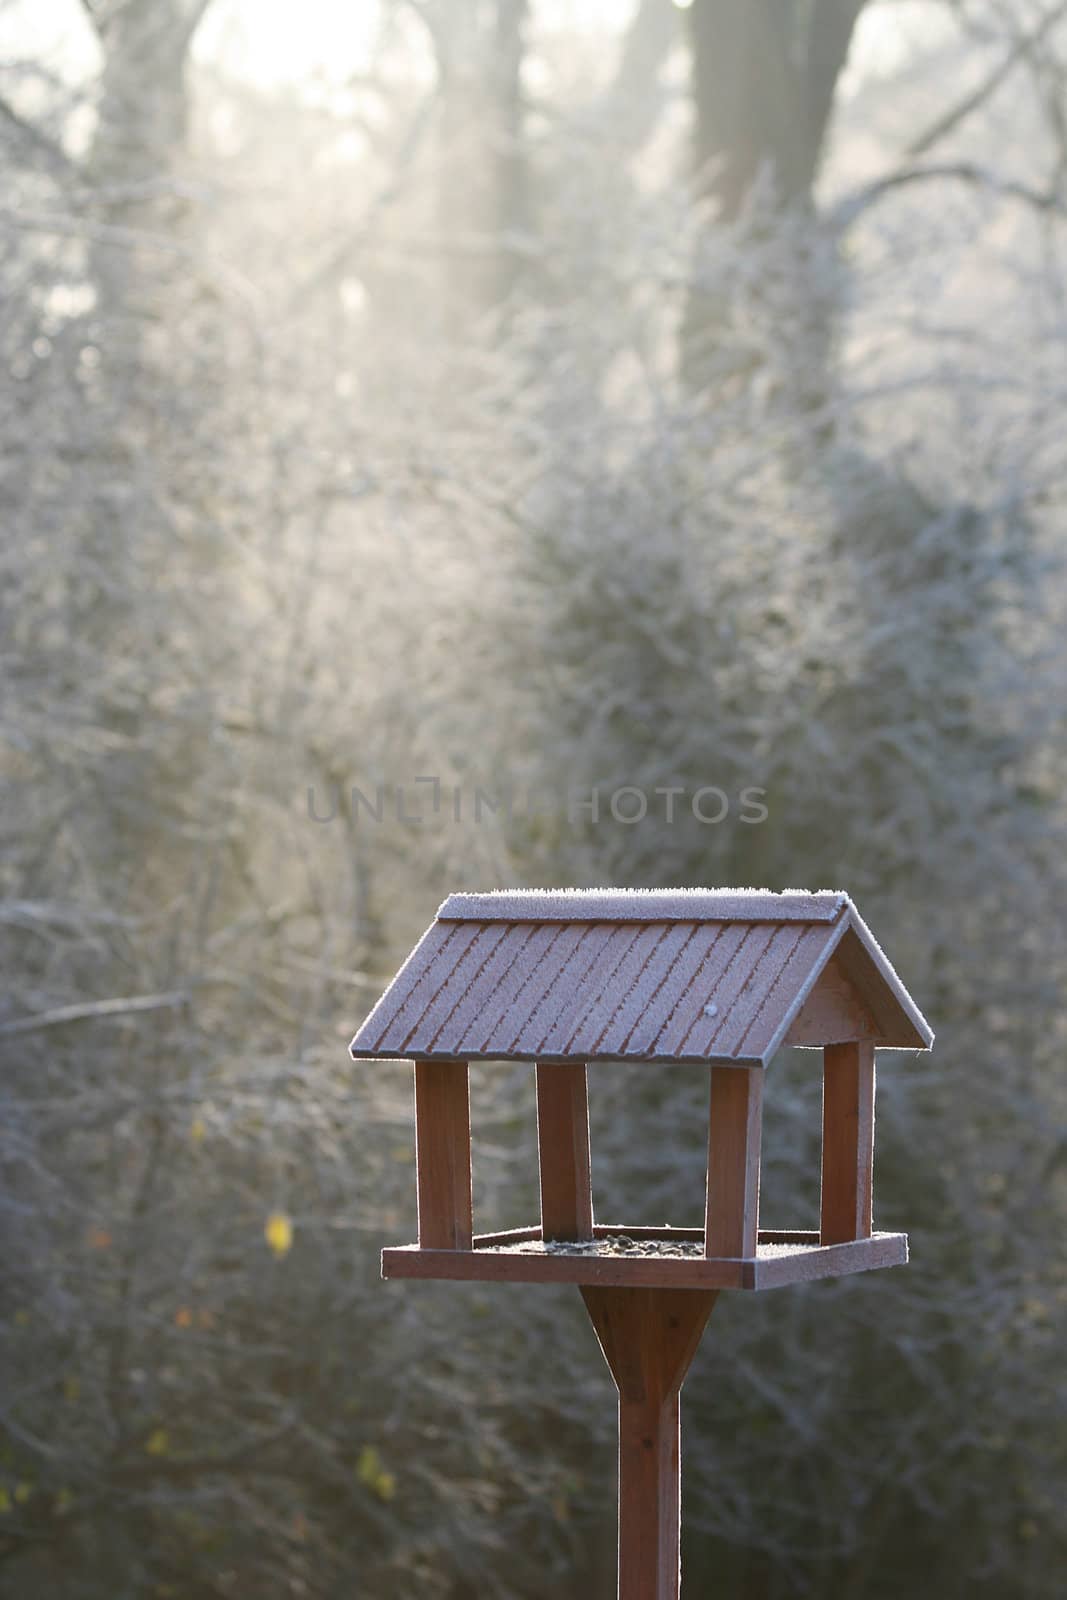 Frozen bird house in first winter morning light